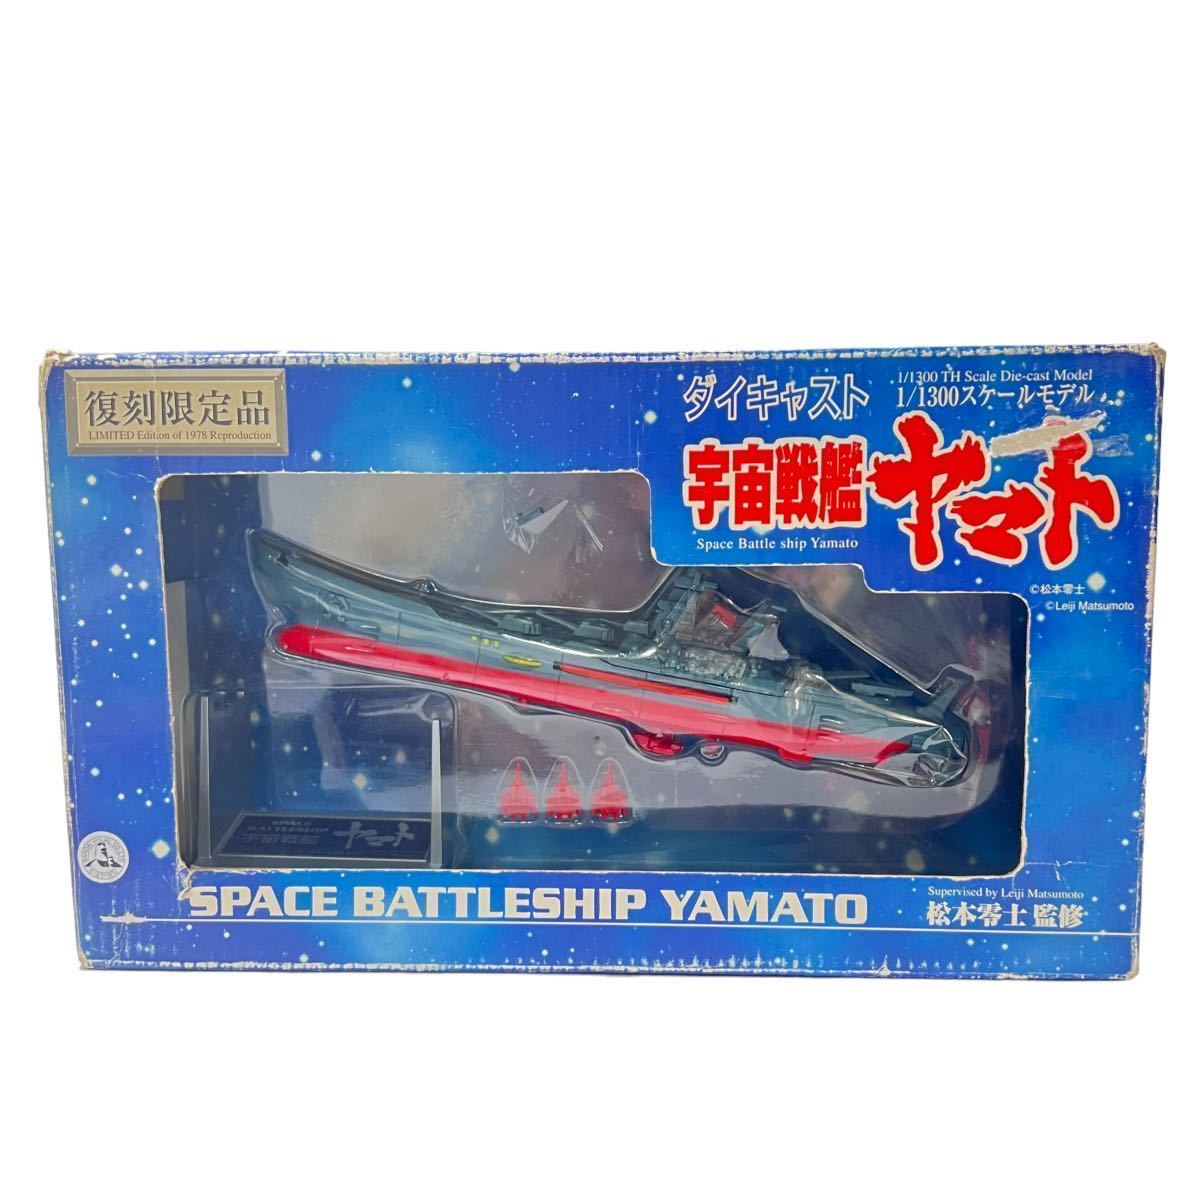 未使用■ 復刻限定品 宇宙戦艦ヤマト ダイキャスト 1/1300スケールモデル 松本零士 SPACE BATTELESHIP YAMATO